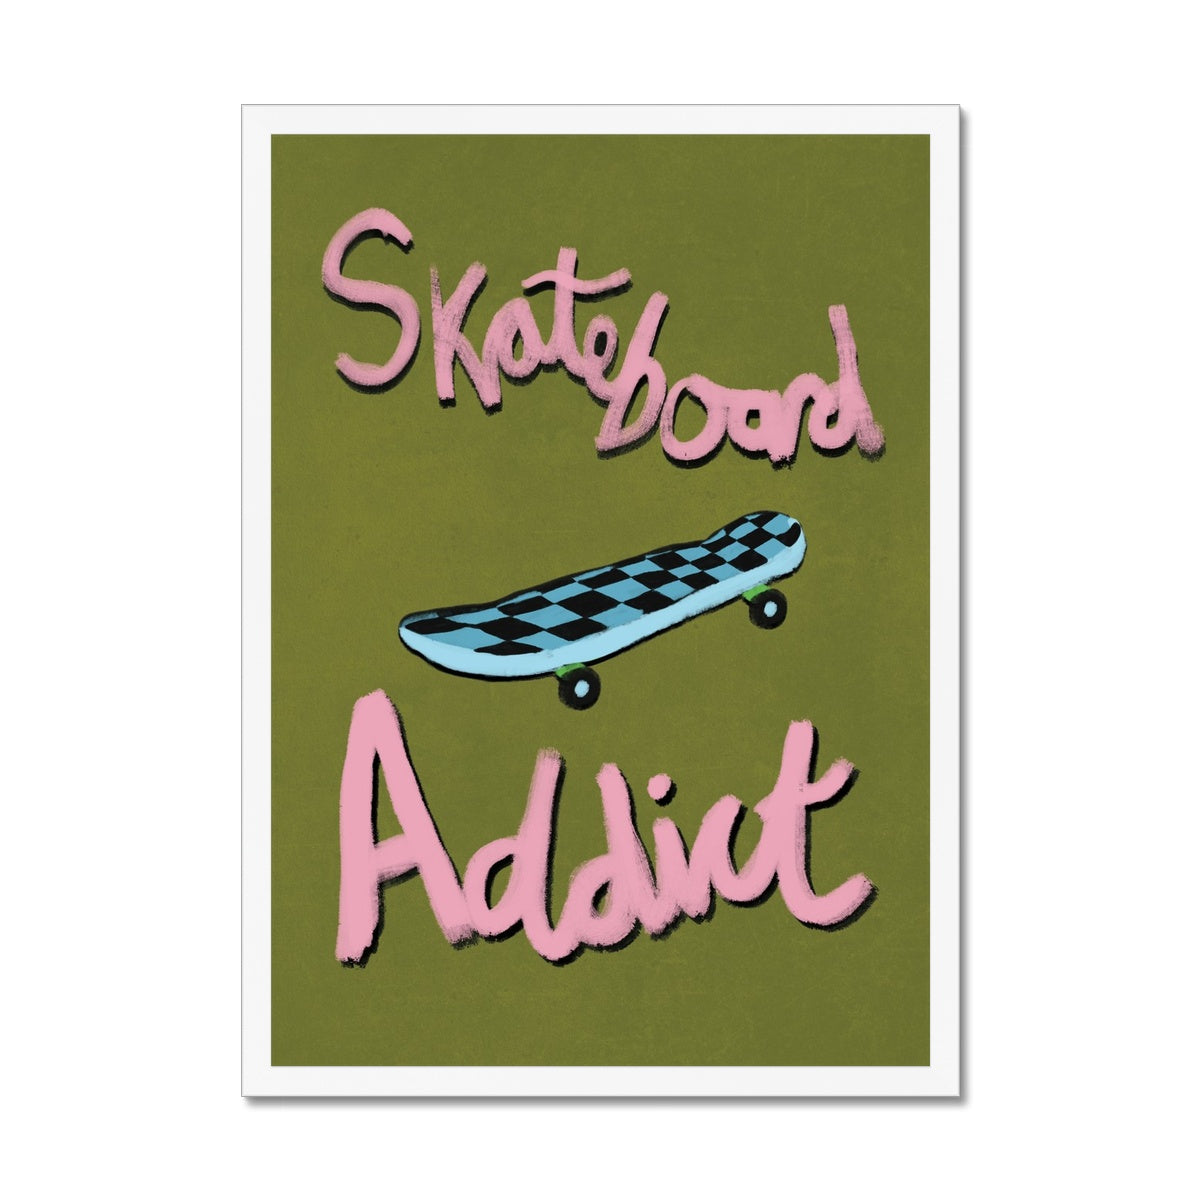 Skateboard Addict - Olive Green, Pink, Blue Framed Print